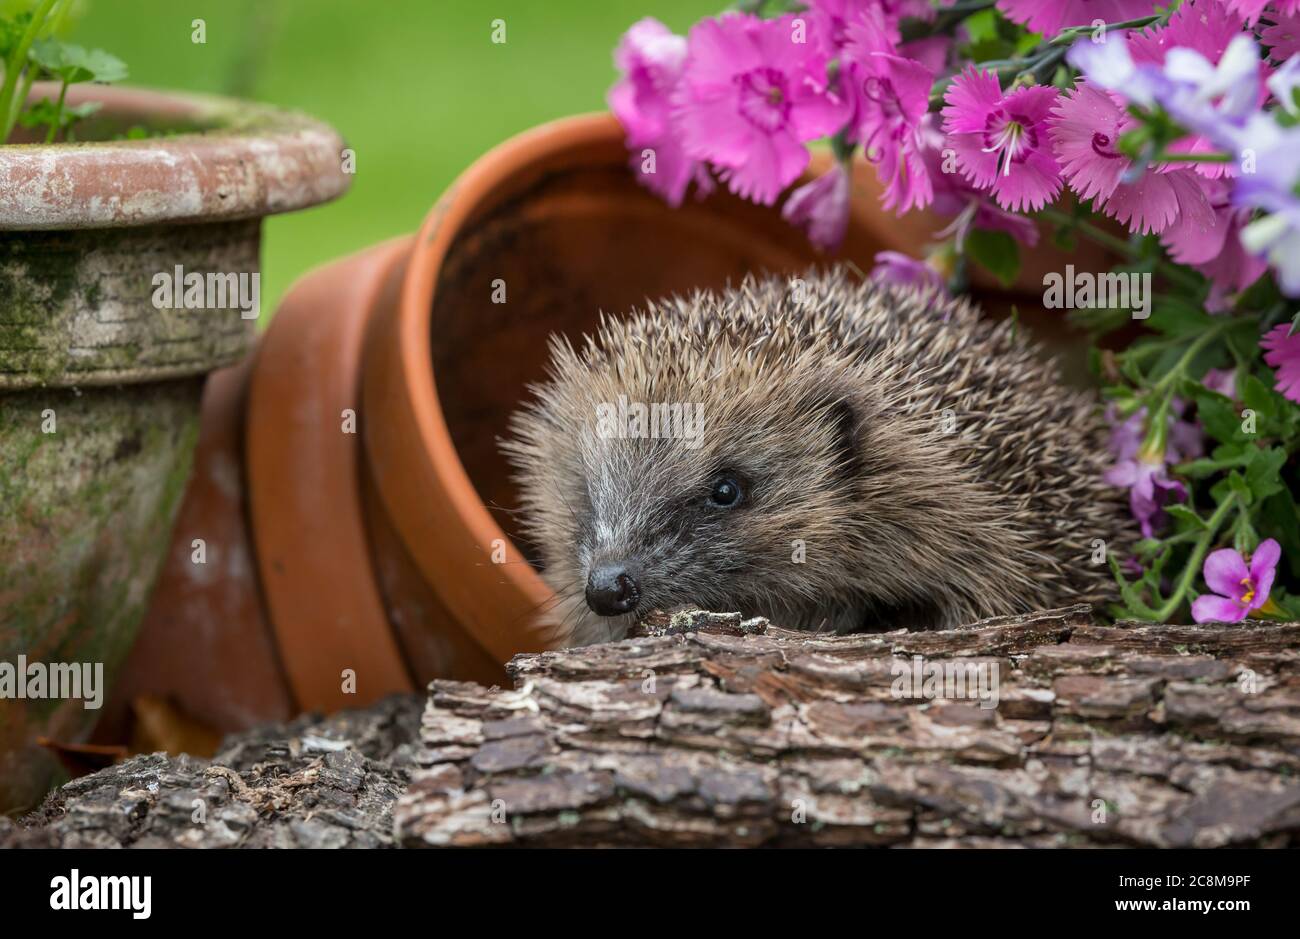 Hedgehog, (Scientific or latin name: Erinaceus Europaeus) Juvenile, wild, European hedgehog foraging in colourful summer flowerbed.  Facing left. Stock Photo